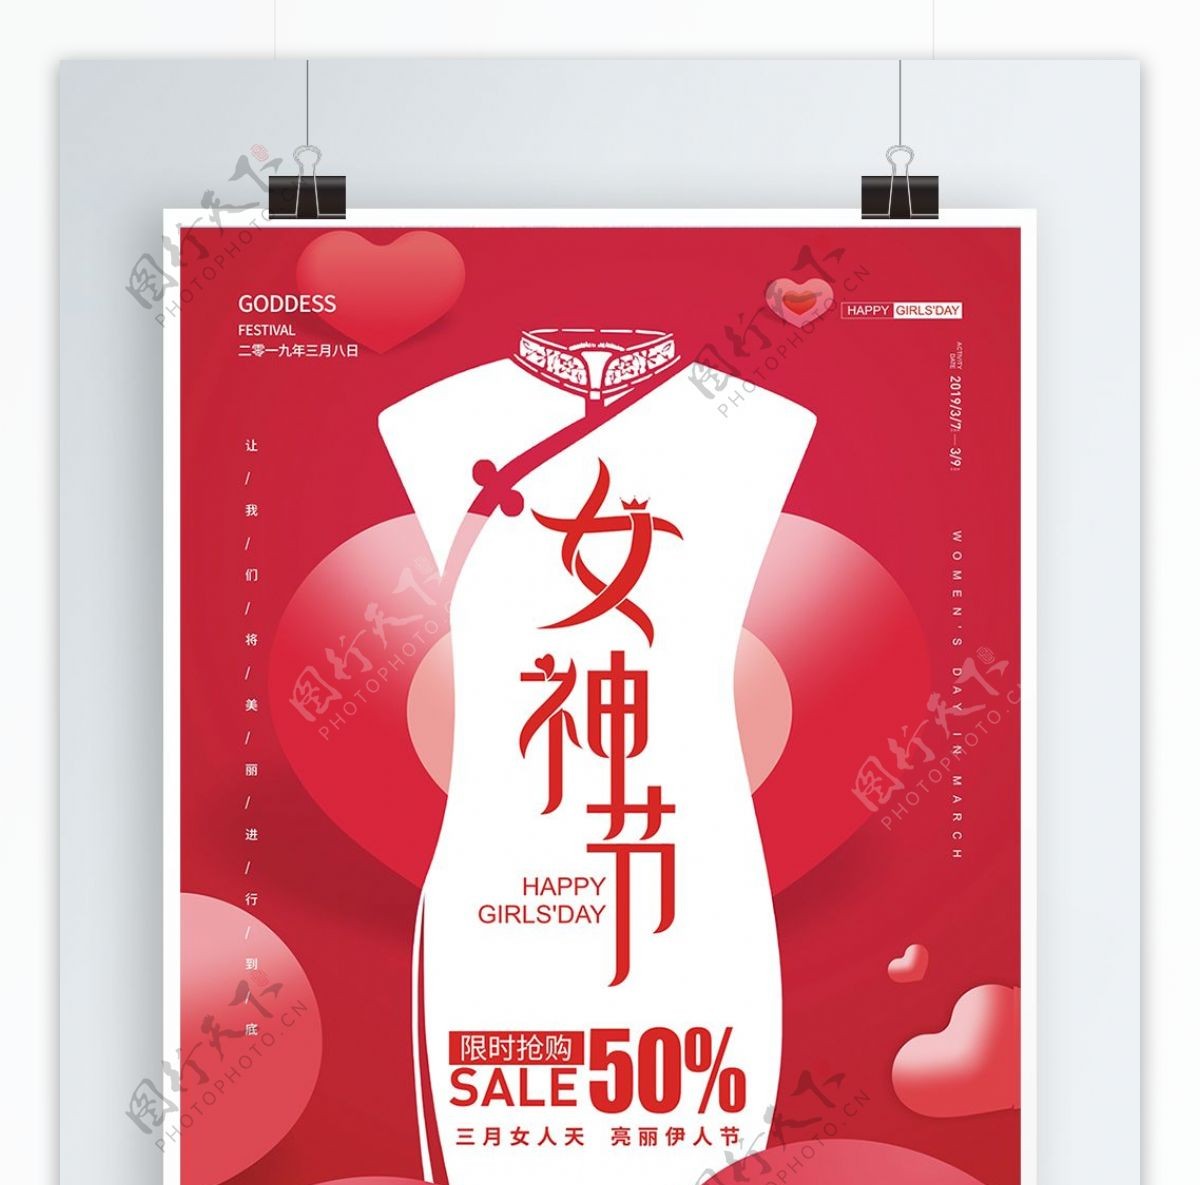 中国红喜庆旗袍女神节38妇女节节日促销